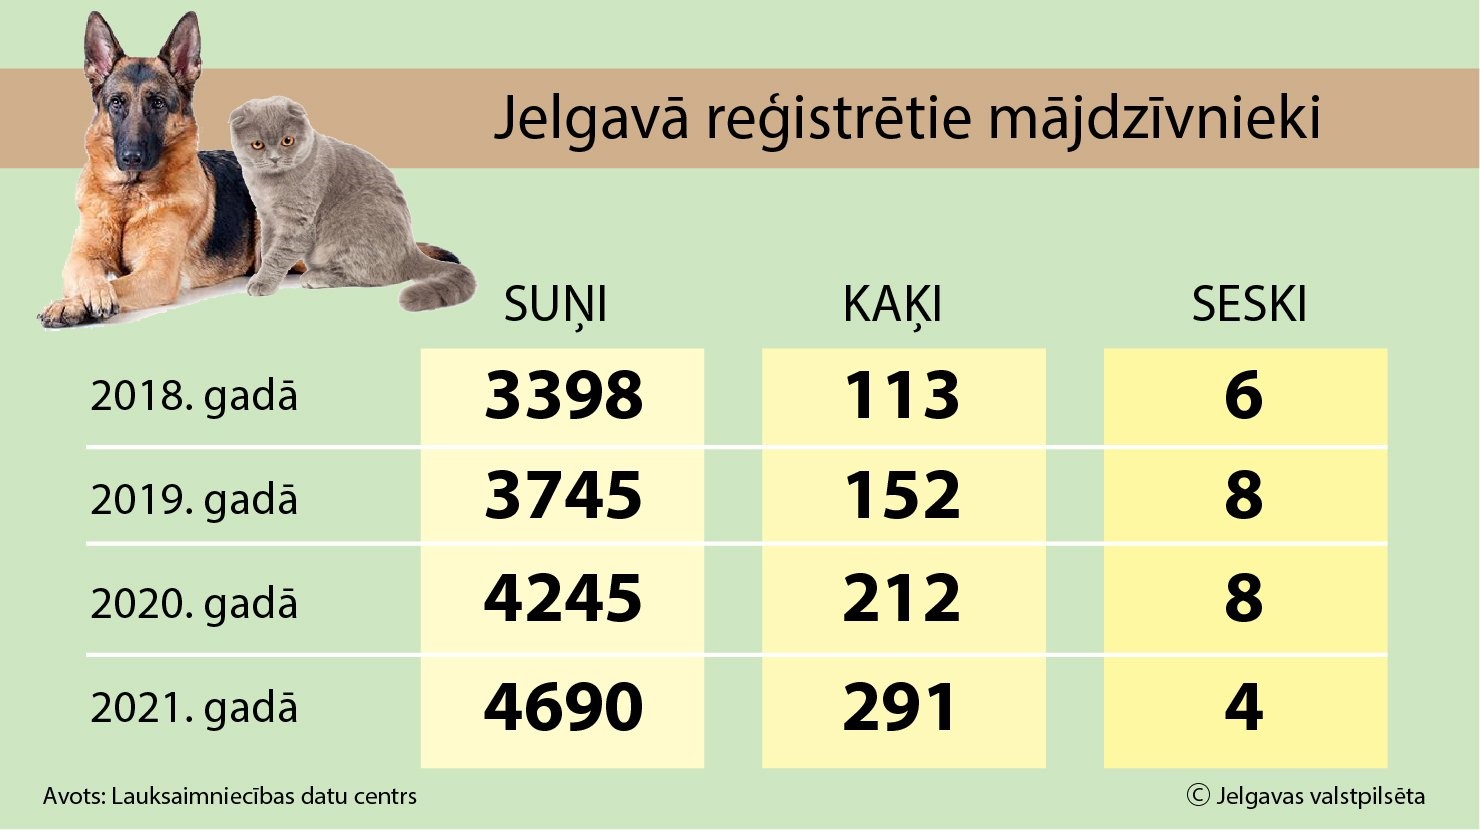 Jelgavā reģistrētie mājdzīvnieki. Foto: jelgava.lv